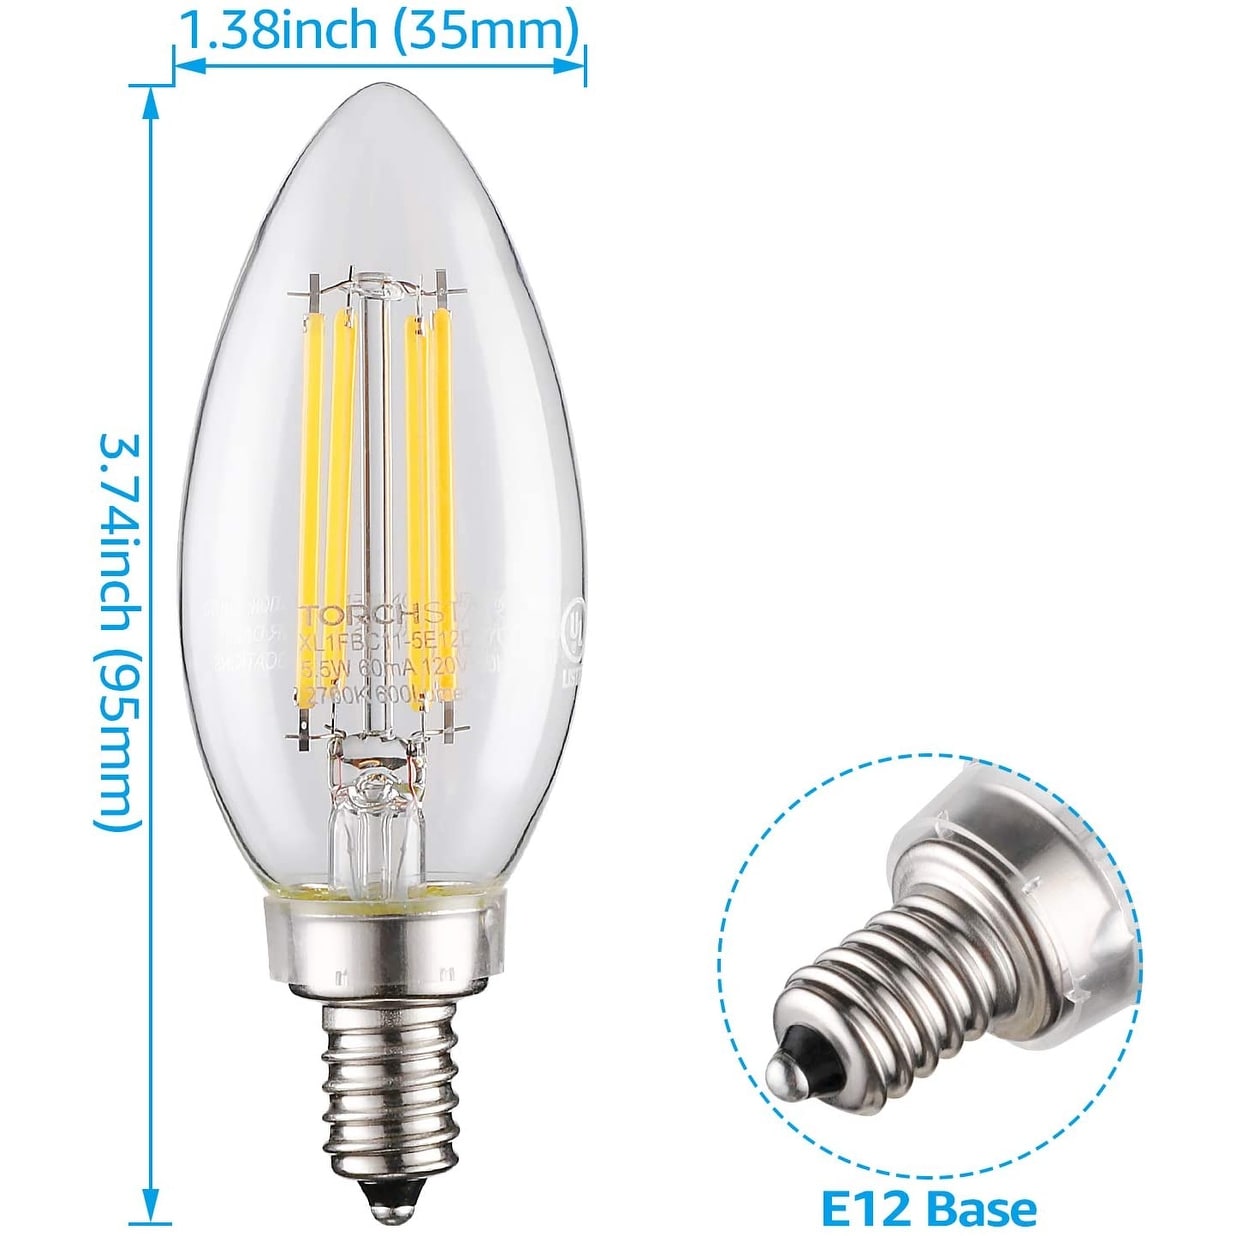 Bulbright 6PACK LED Filament Bulb Tubular T25 4W LED Filament Bulb Warm White 2700K LED Mini Bulb Night Light 30W Equivalent 110-120VAC E12 Base 4 